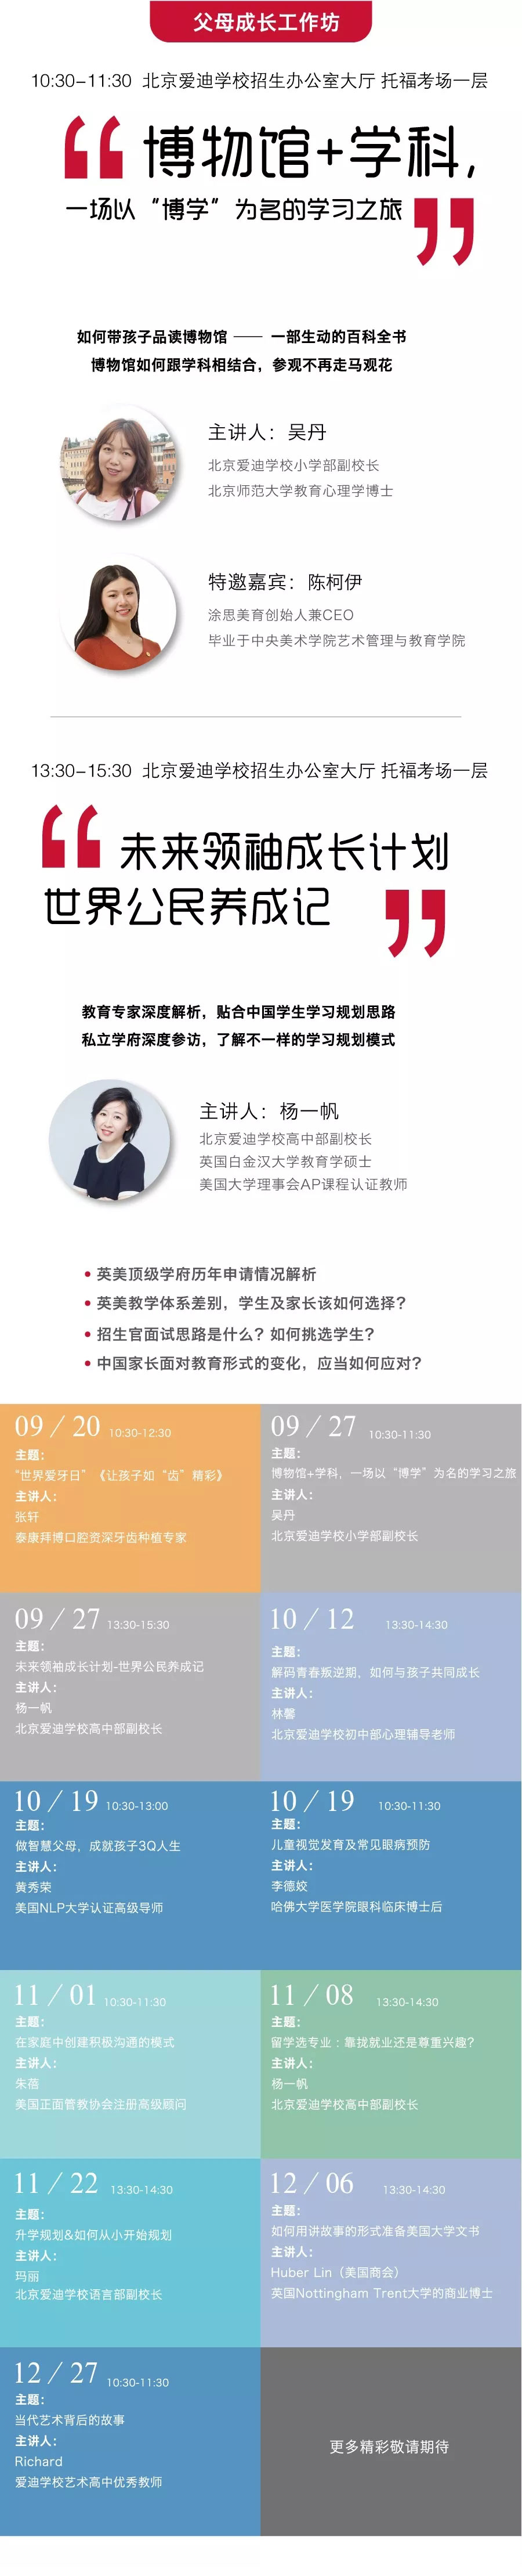 北京爱迪学校2019年9月27日，父母成长工作坊社区即将开启